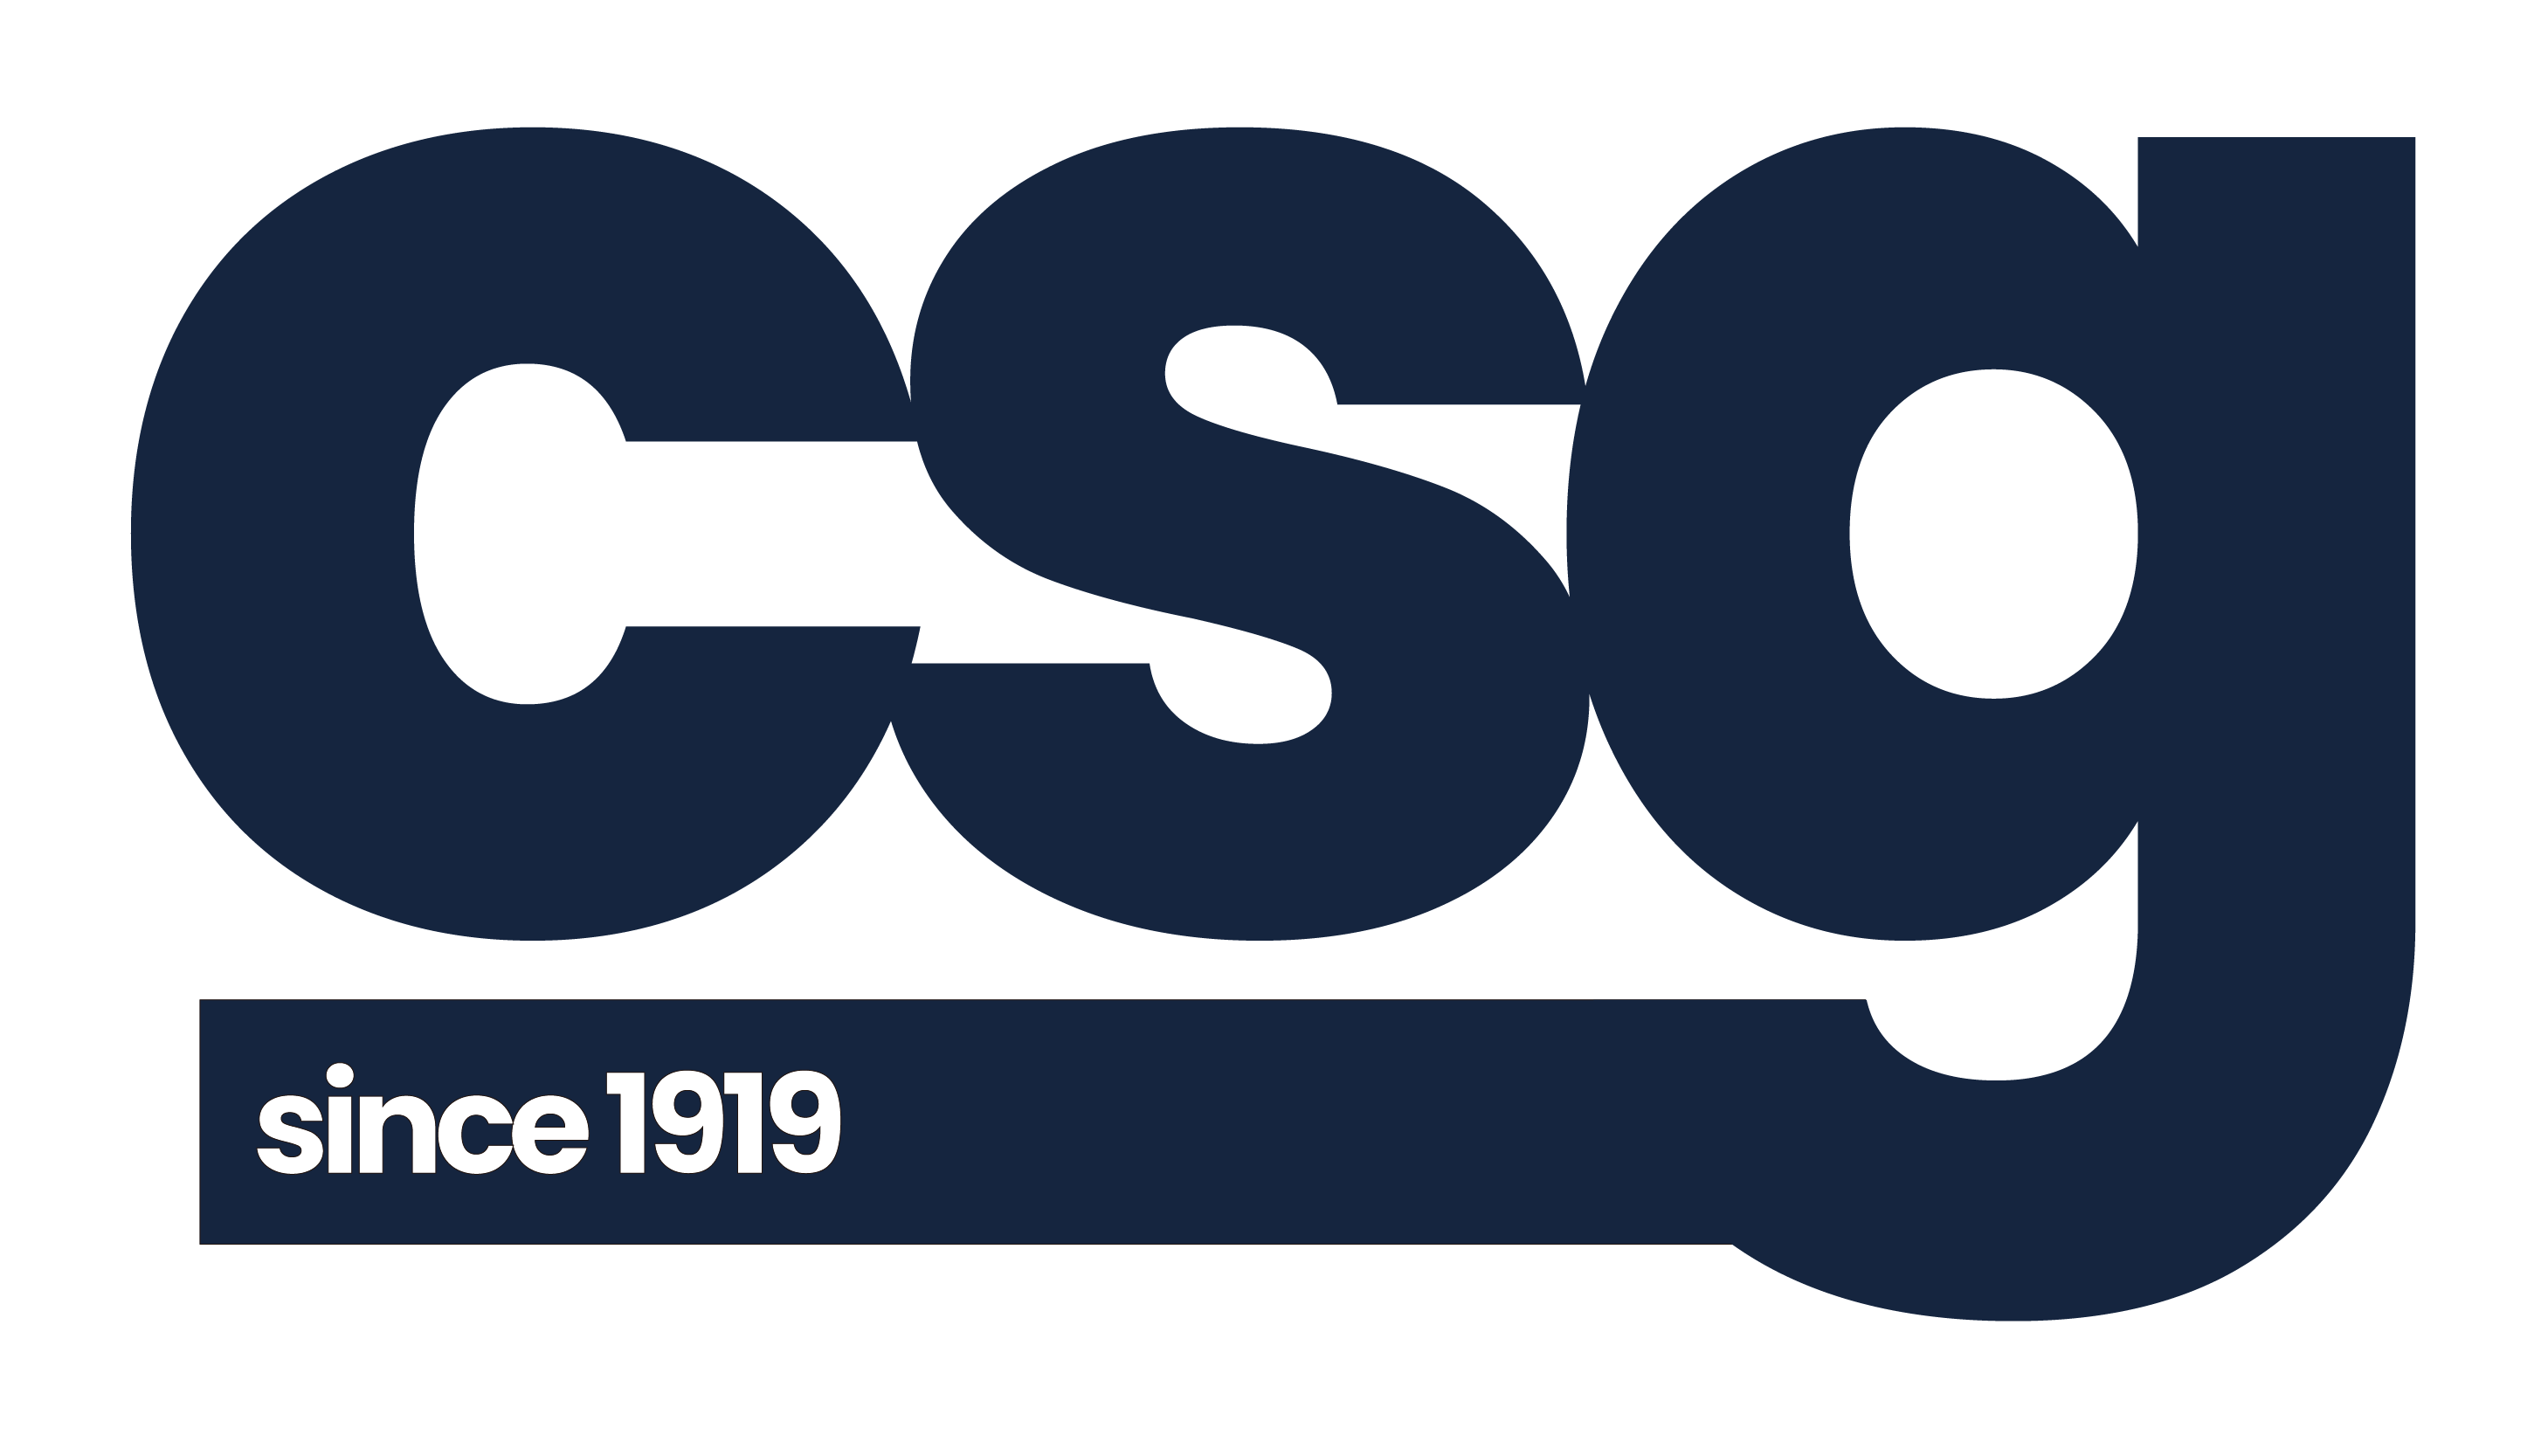 CSG logo in navy blue